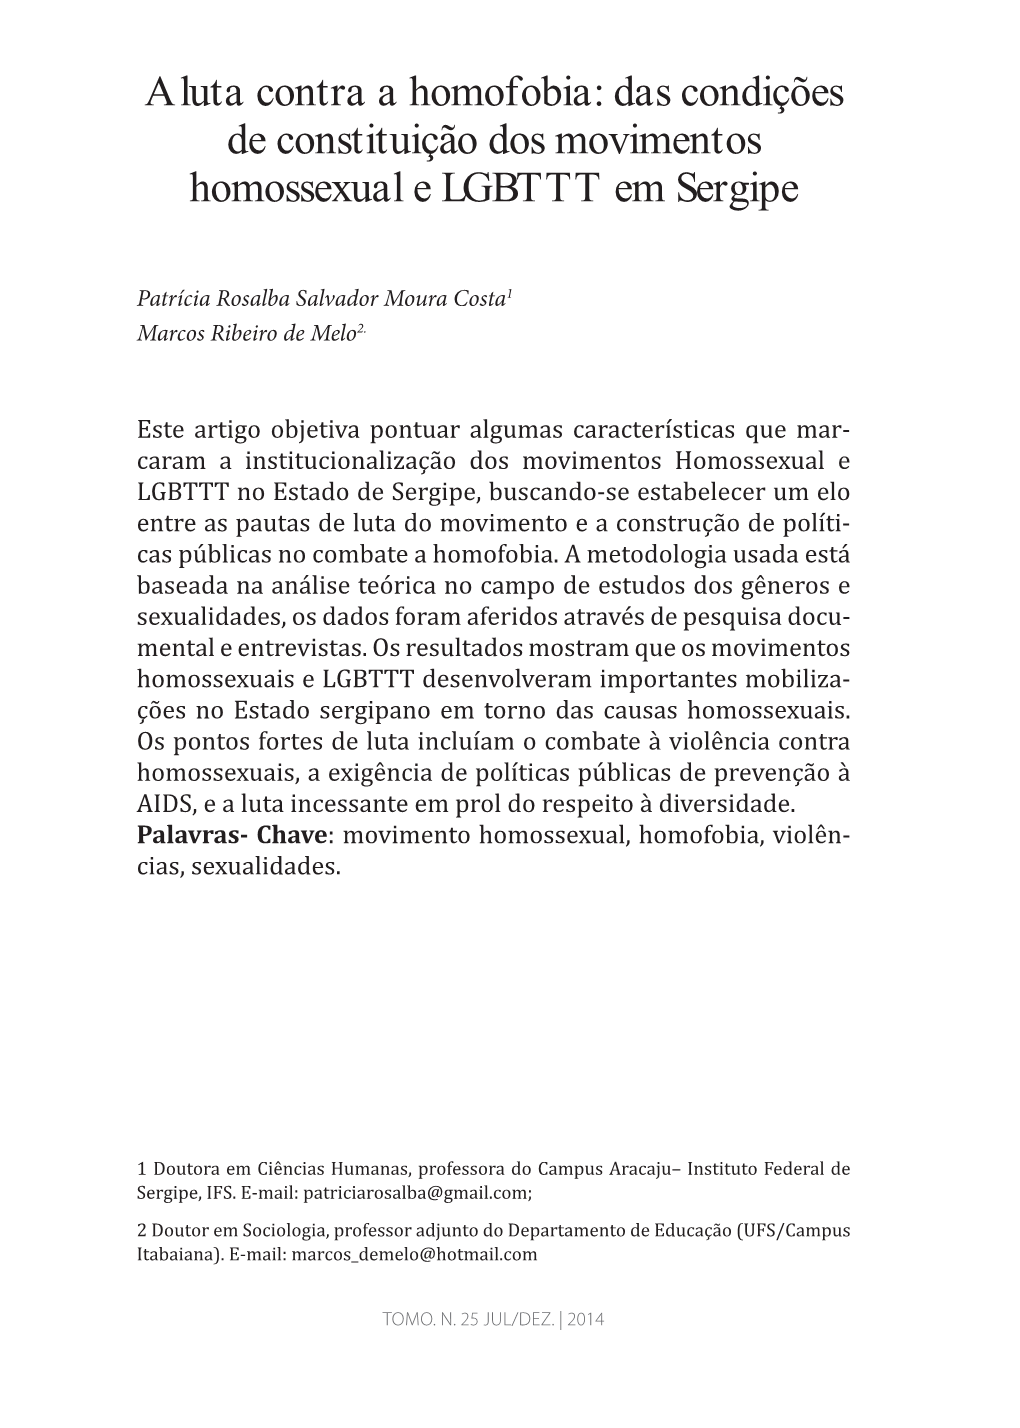 A Luta Contra a Homofobia: Das Condições De Constituição Dos Movimentos Homossexual E LGBTTT Em Sergipe